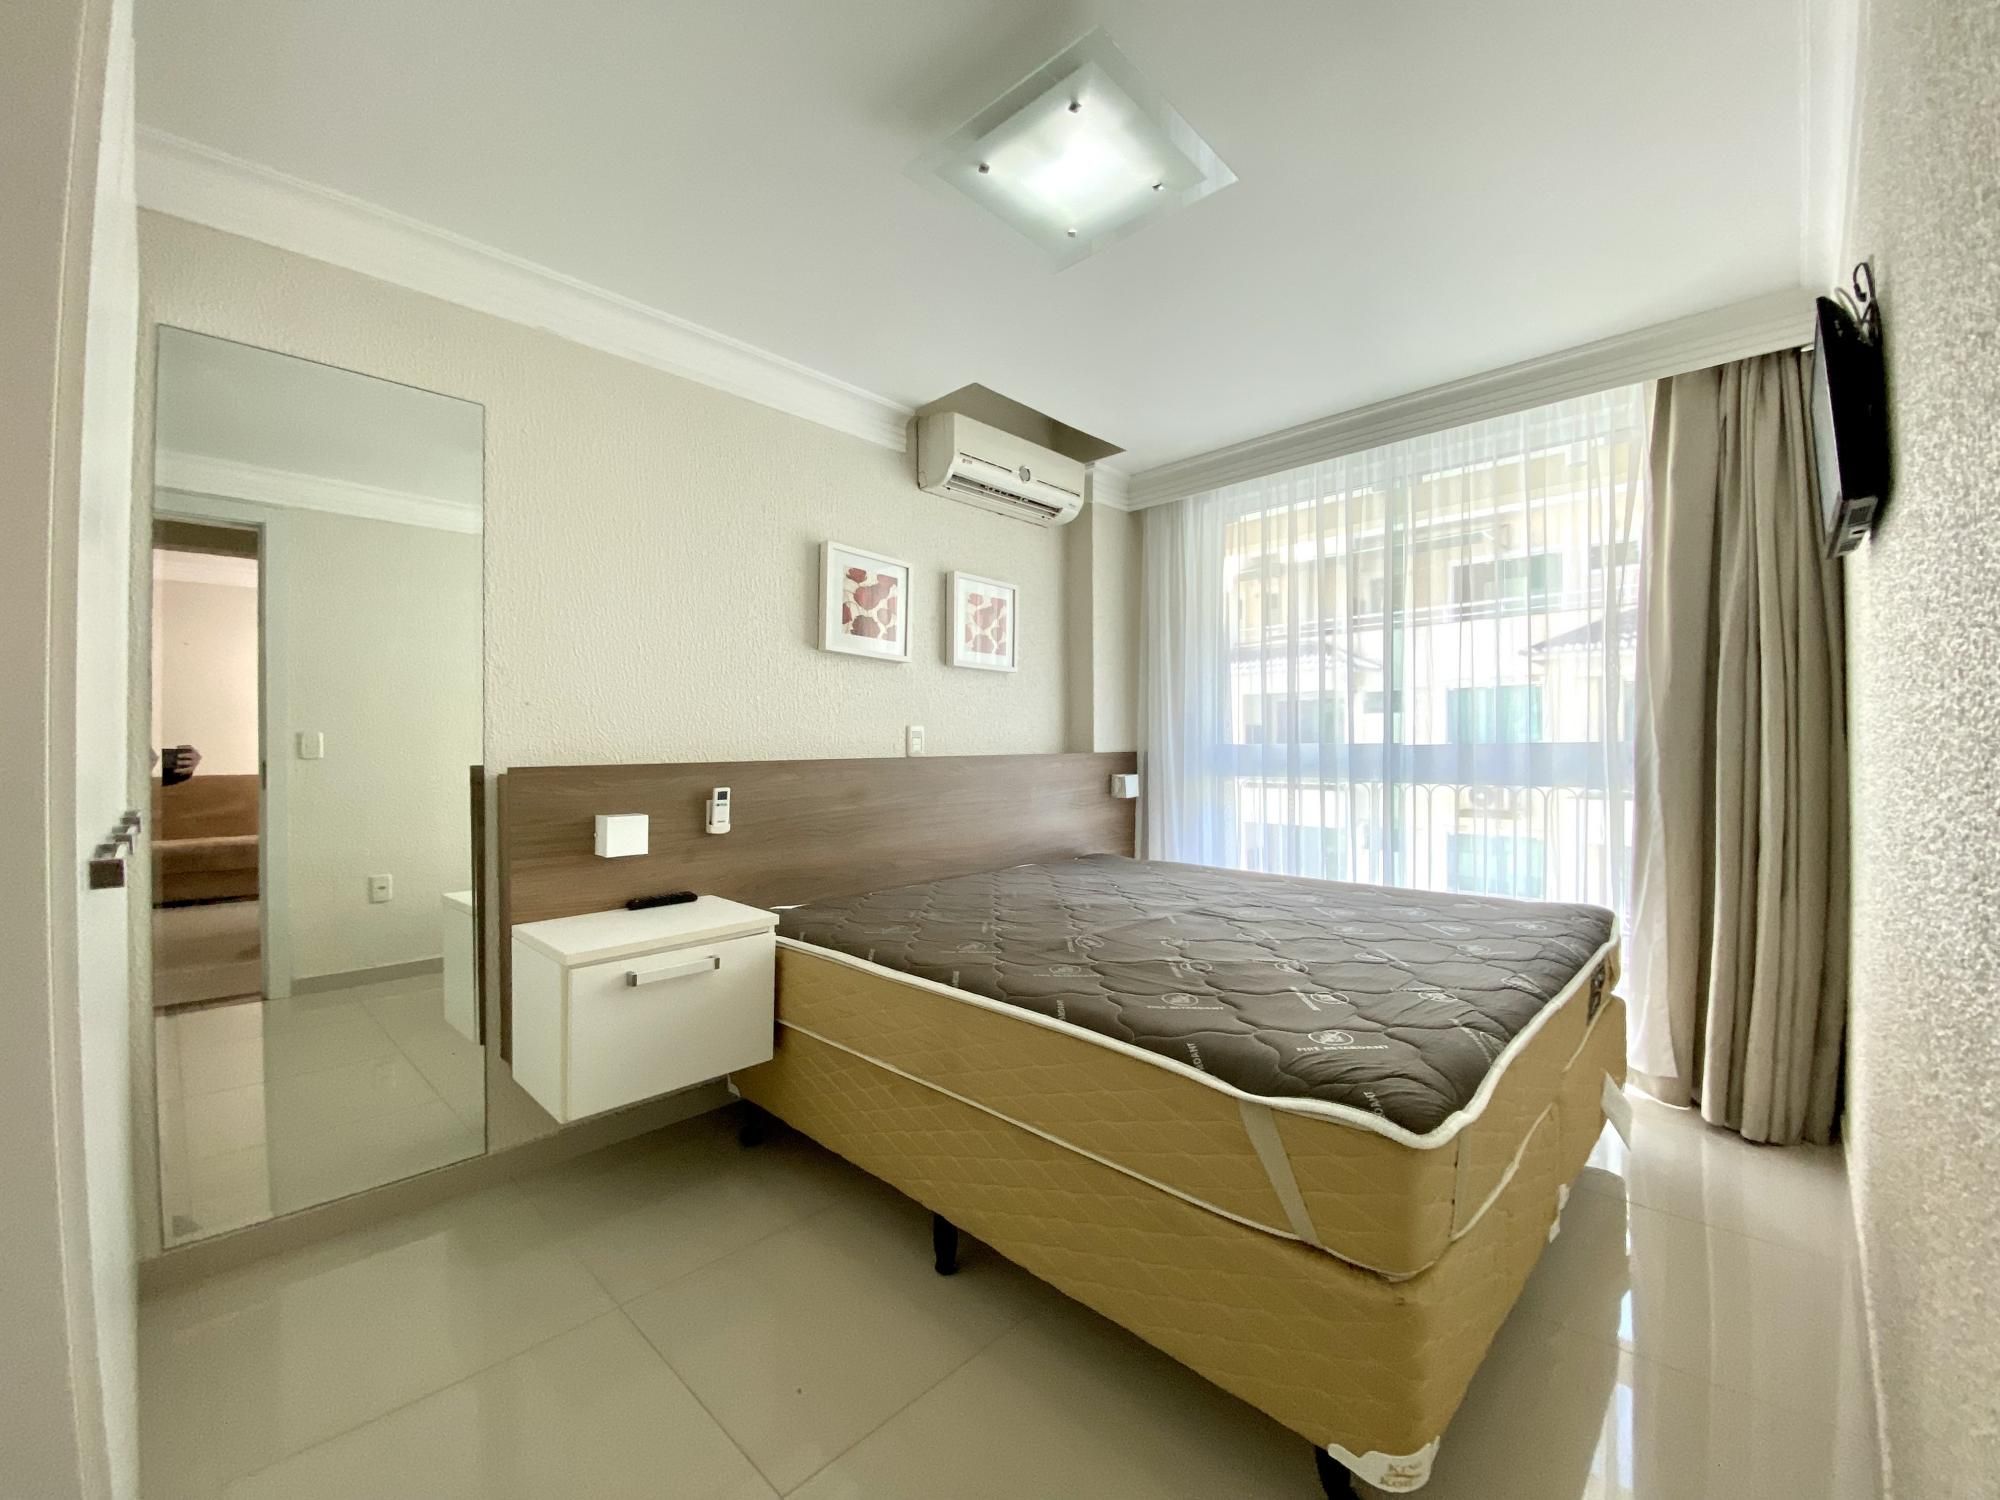 Apartamento com 1 Dormitórios para alugar, 45 m² valor à combinar